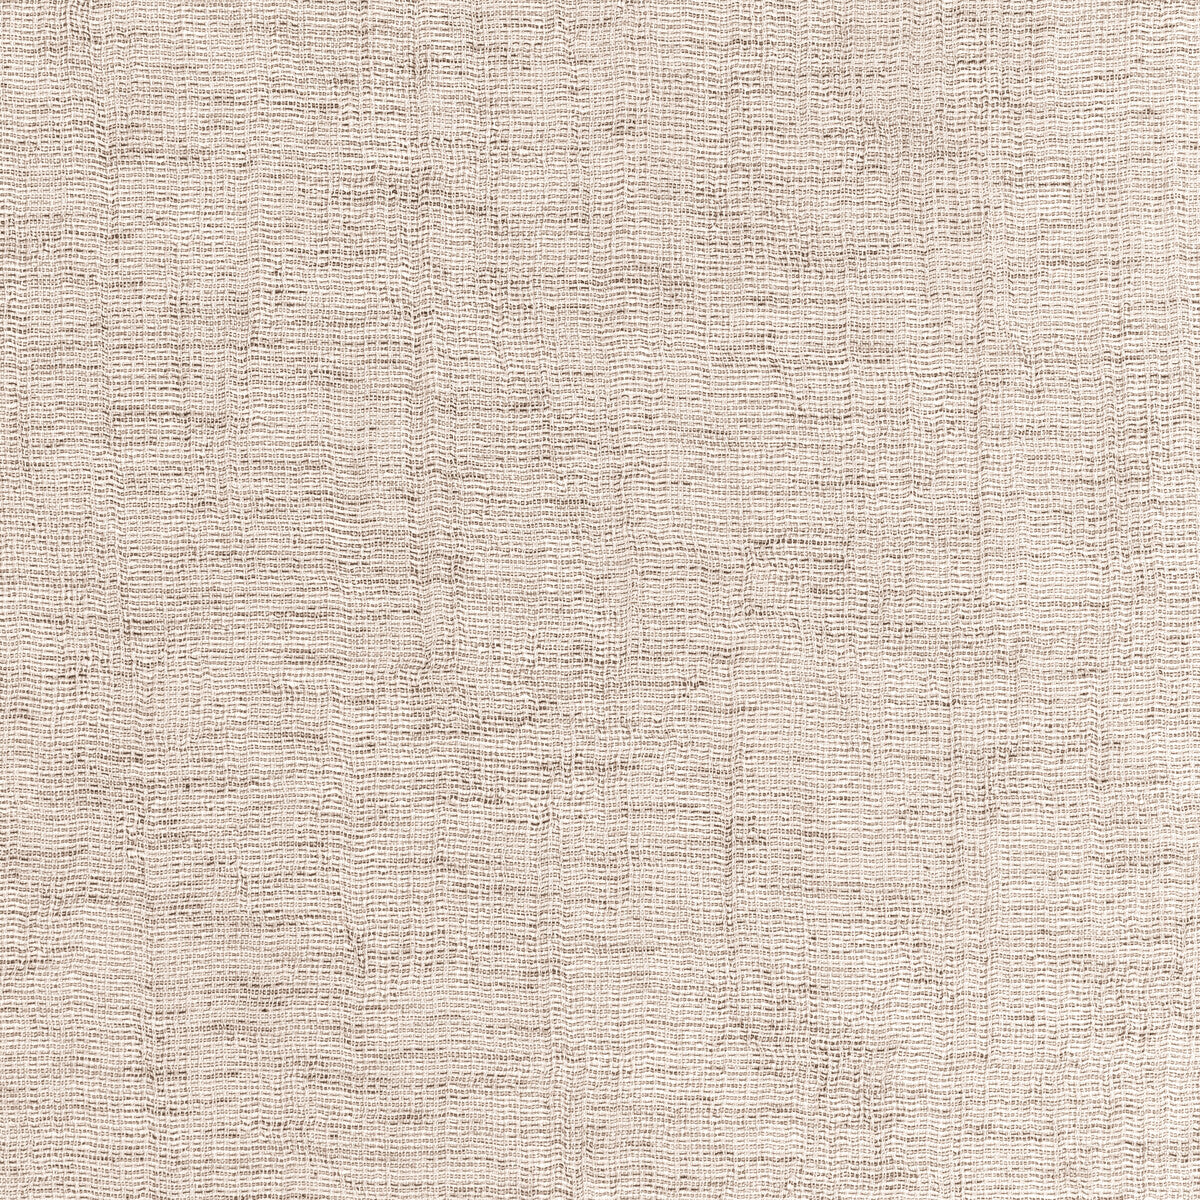 Kravet Basics fabric in 4881-1 color - pattern 4881.1.0 - by Kravet Basics